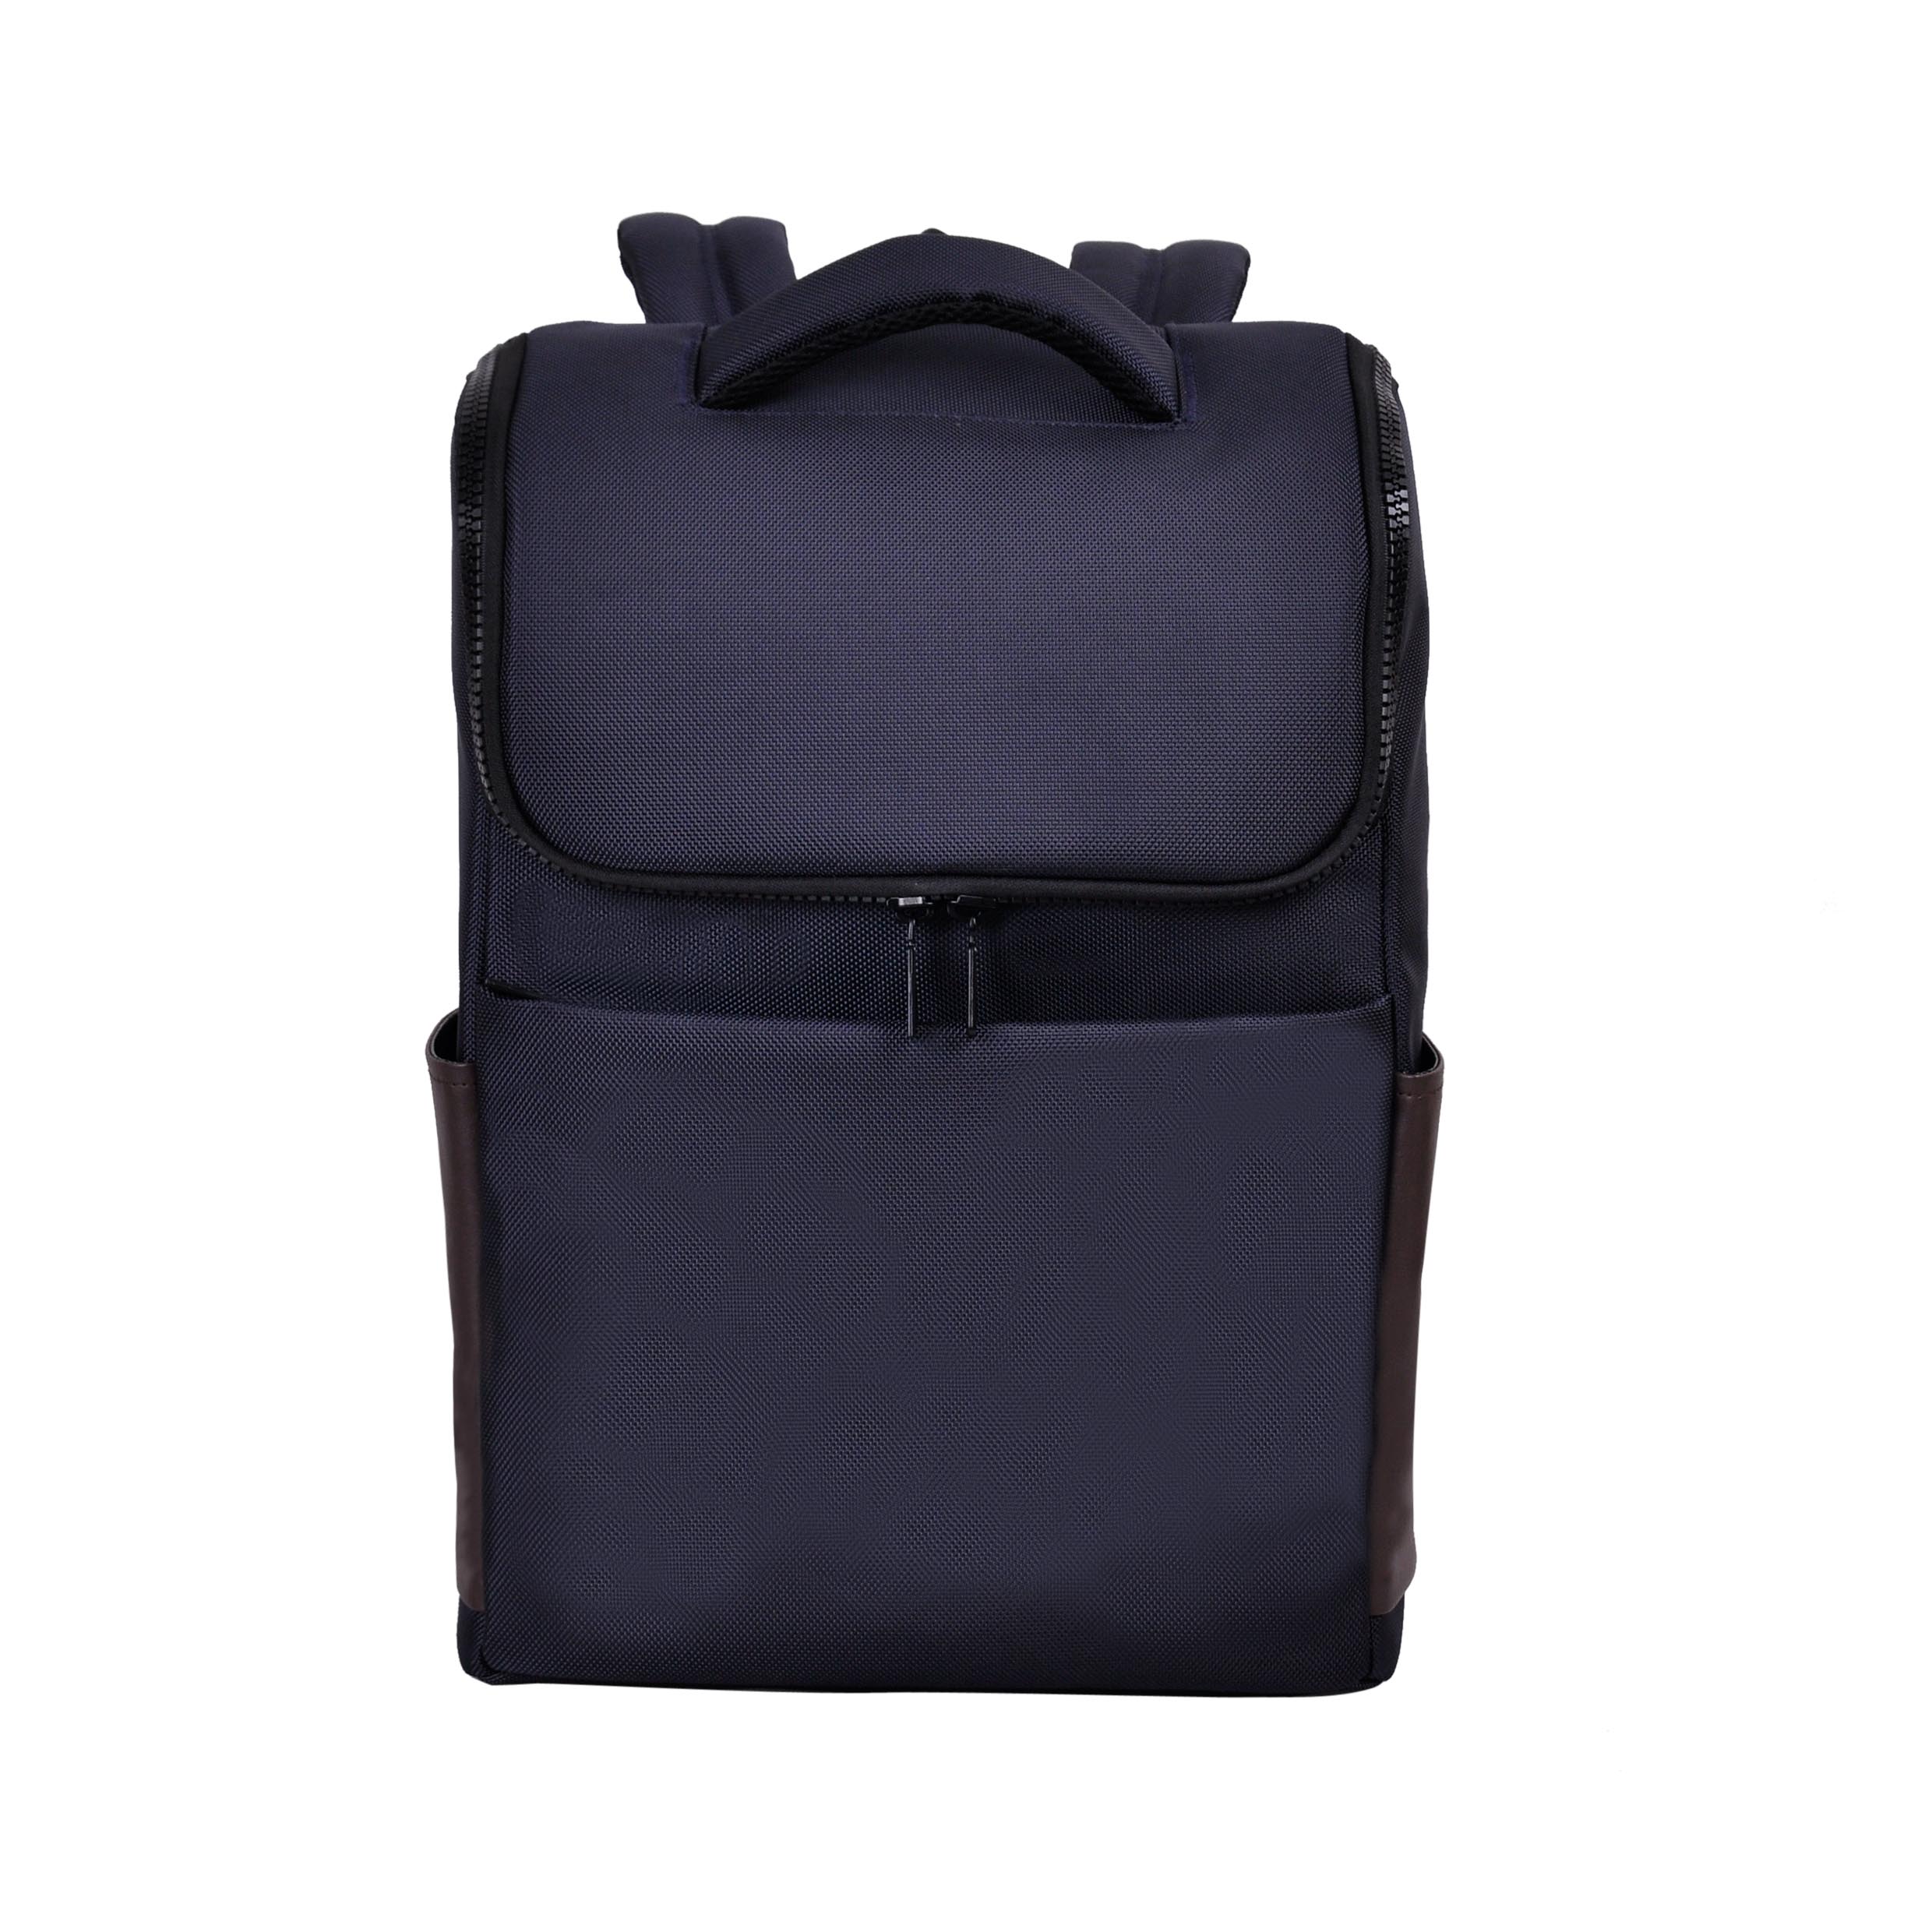 waterproof 15.6 inch laptop backpack